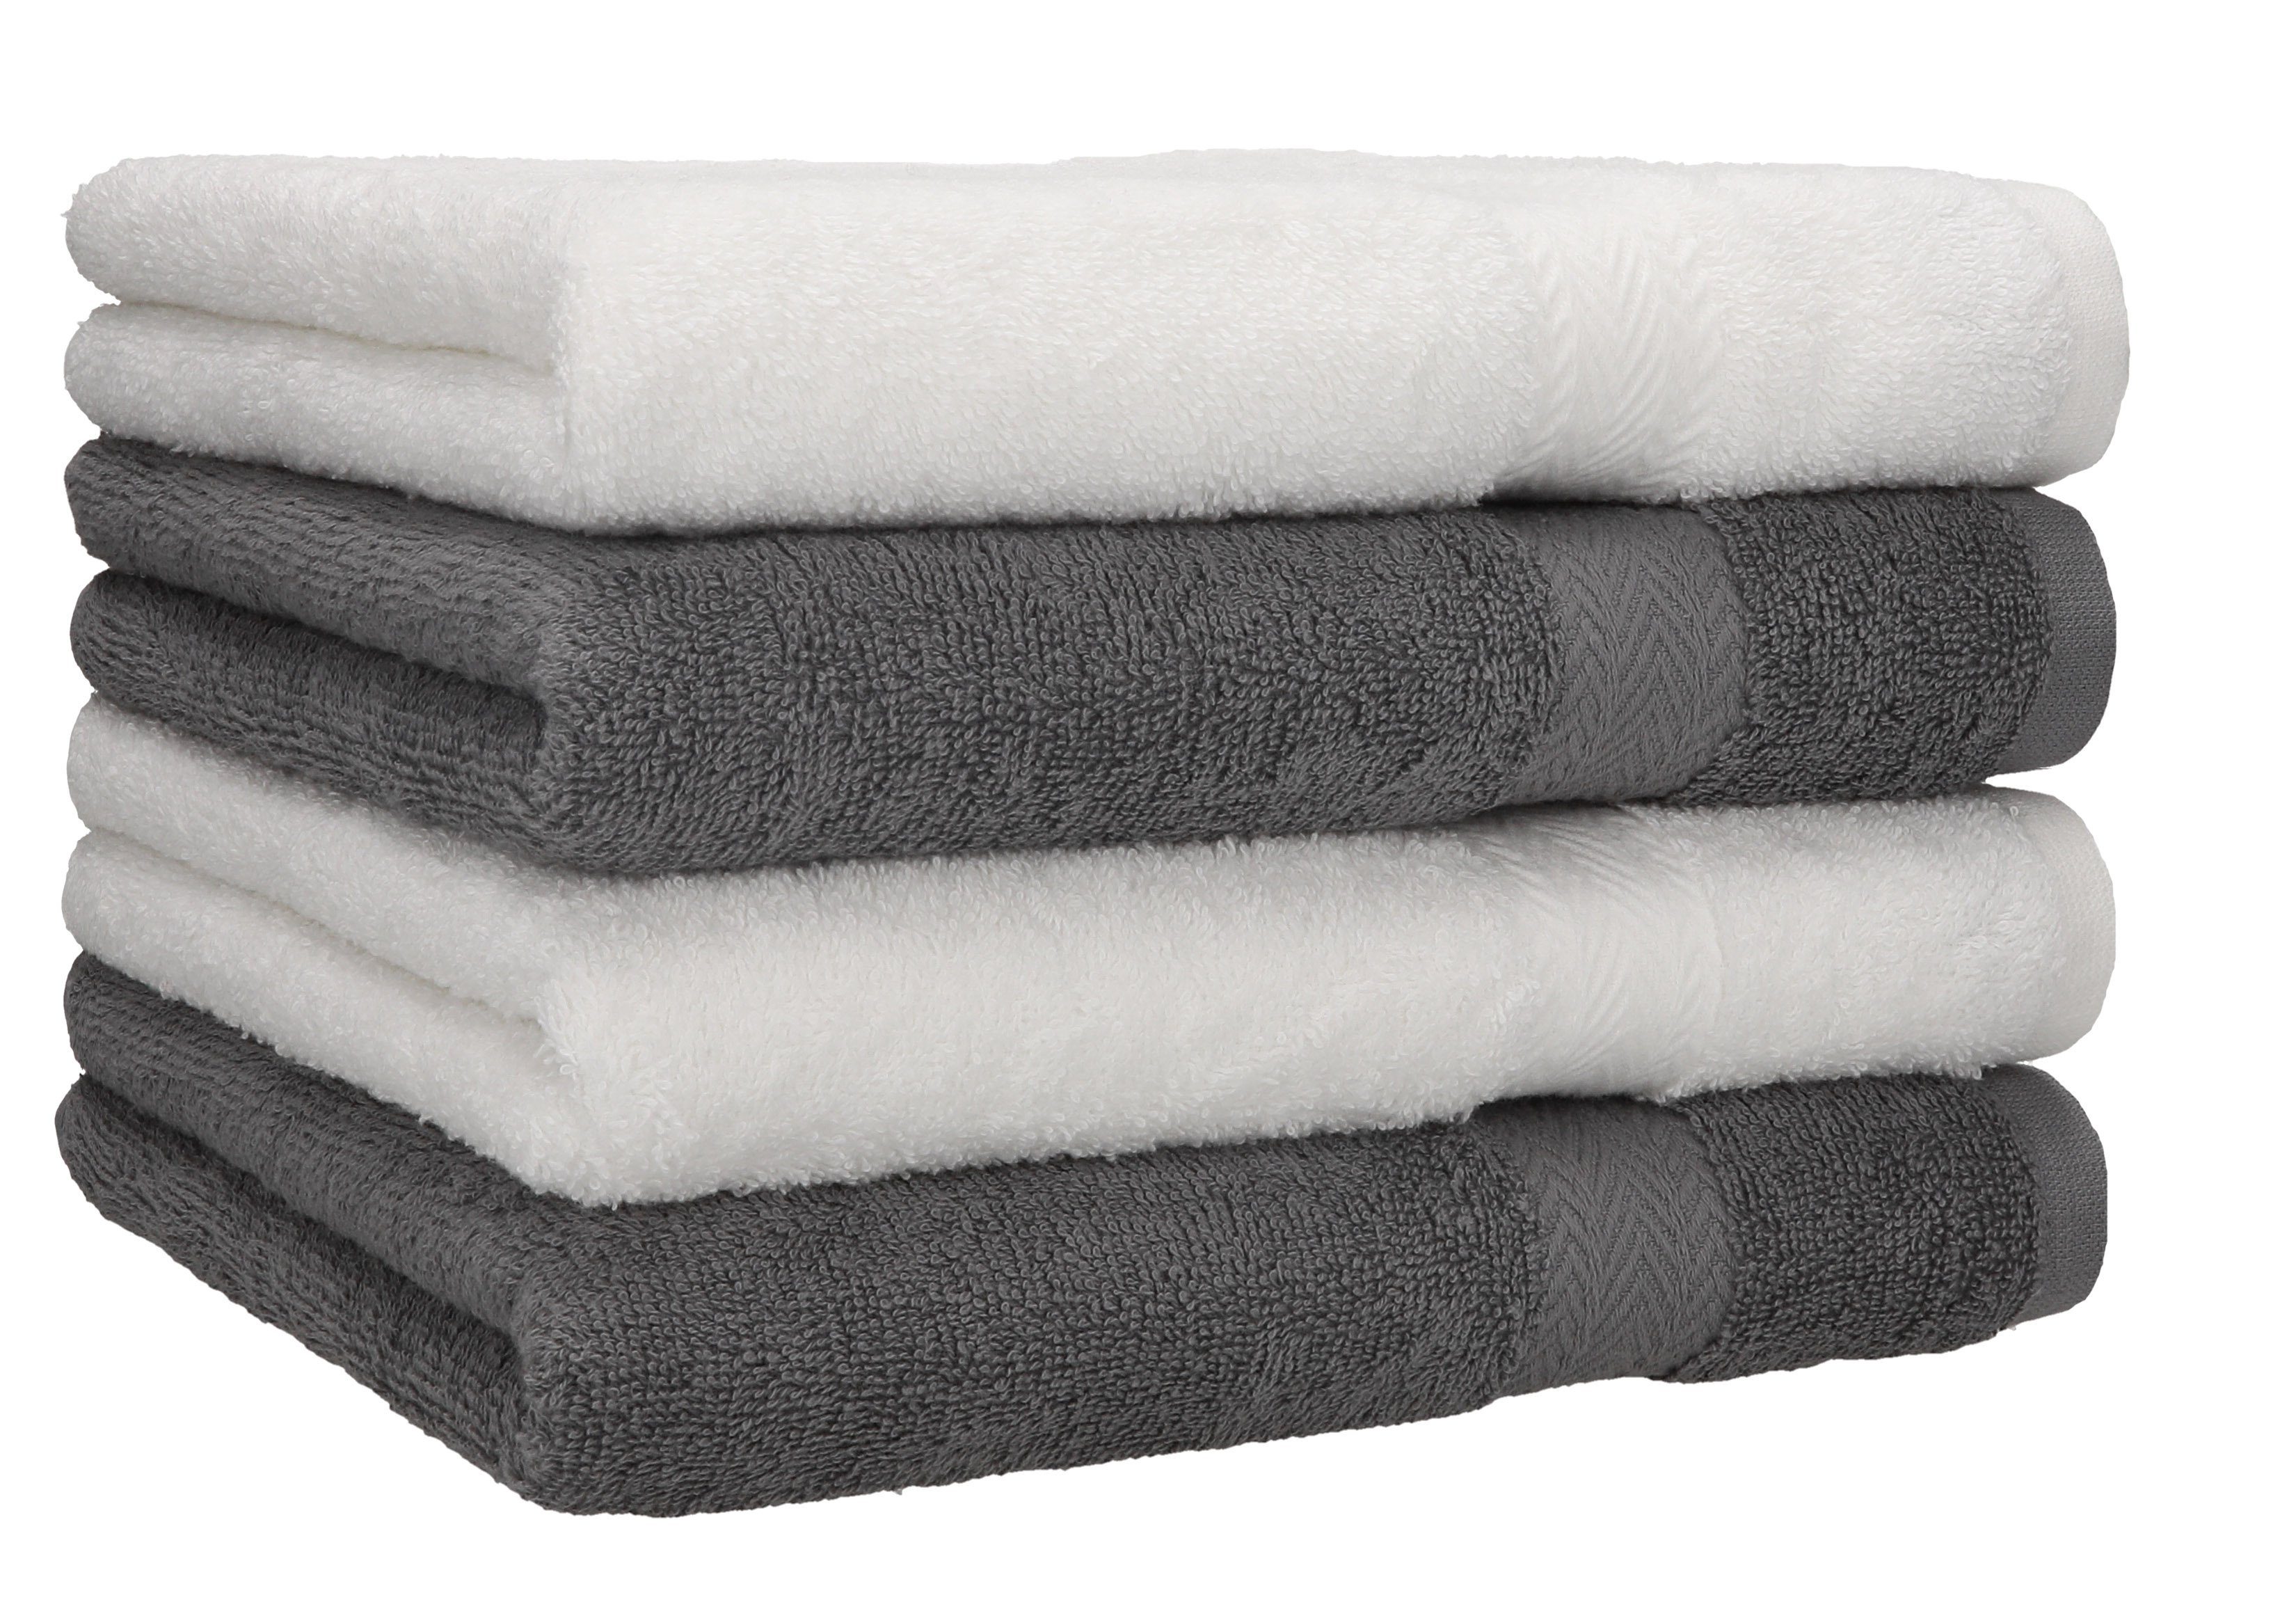 Betz Handtücher 4 Stück Handtücher Premium 4 Handtücher Farbe weiß und anthrazit, 100% Baumwolle